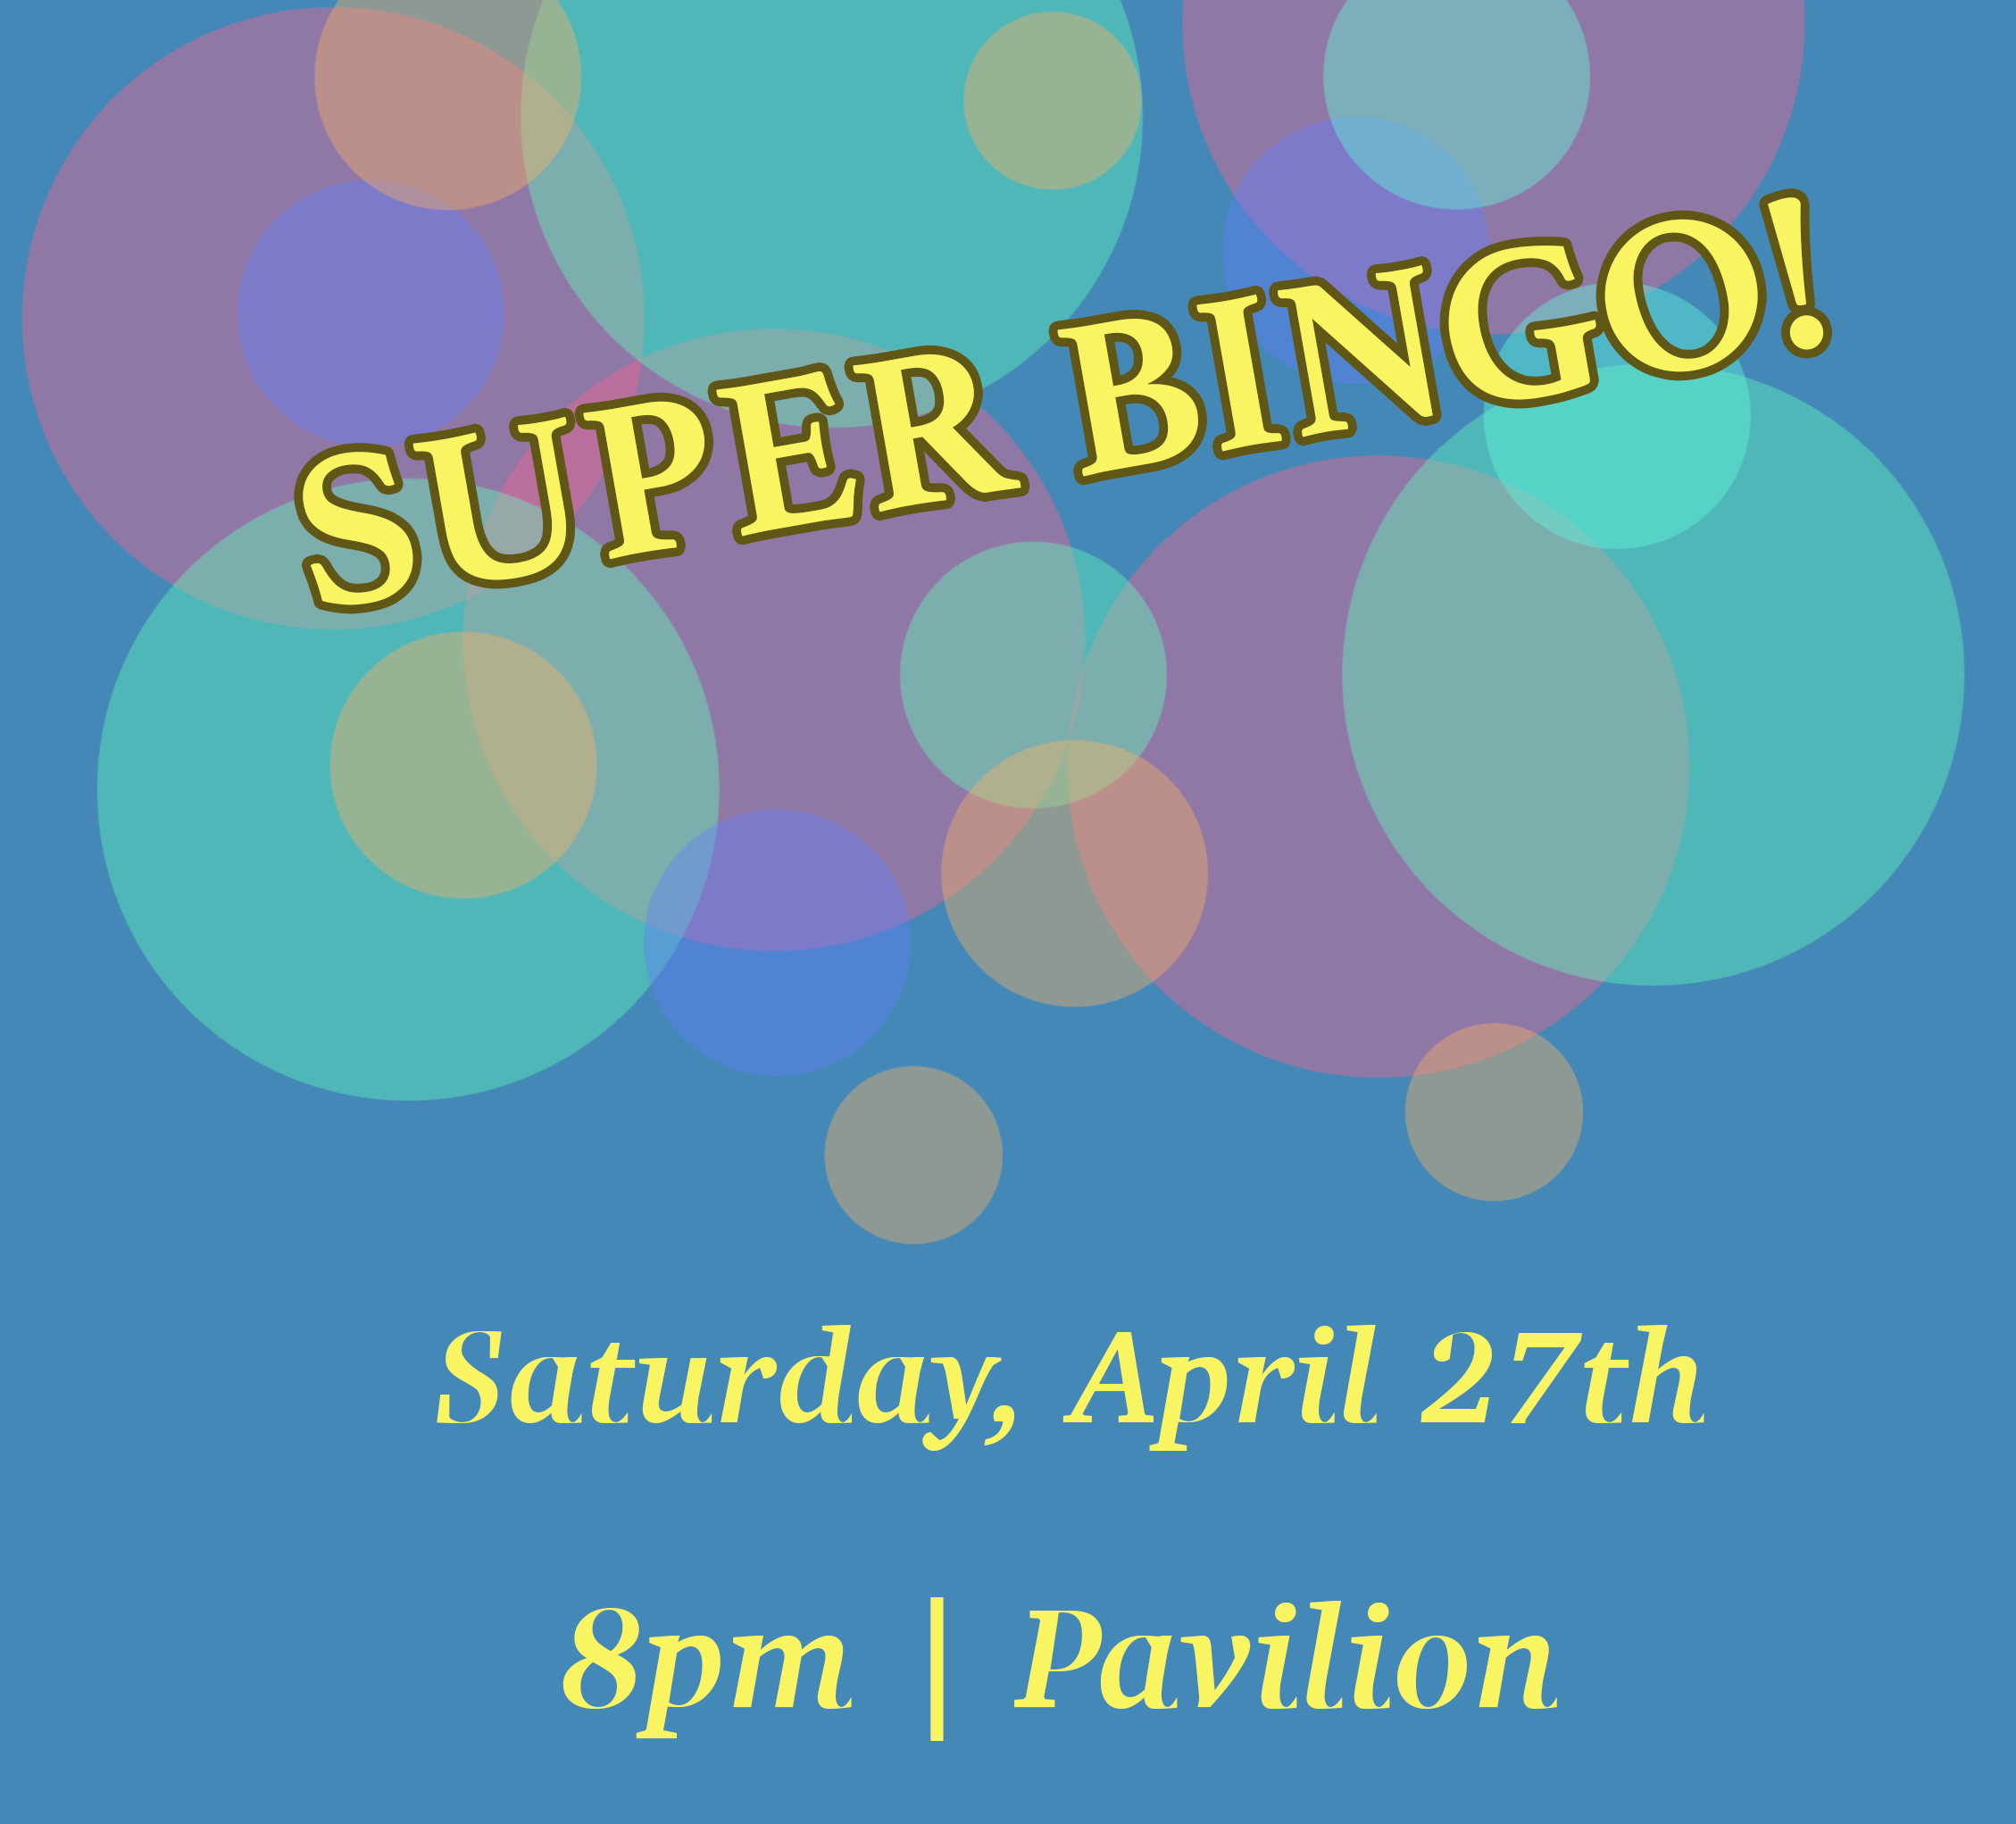 Super Bingo!

Saturday, April 27th

8pm | Pavilion